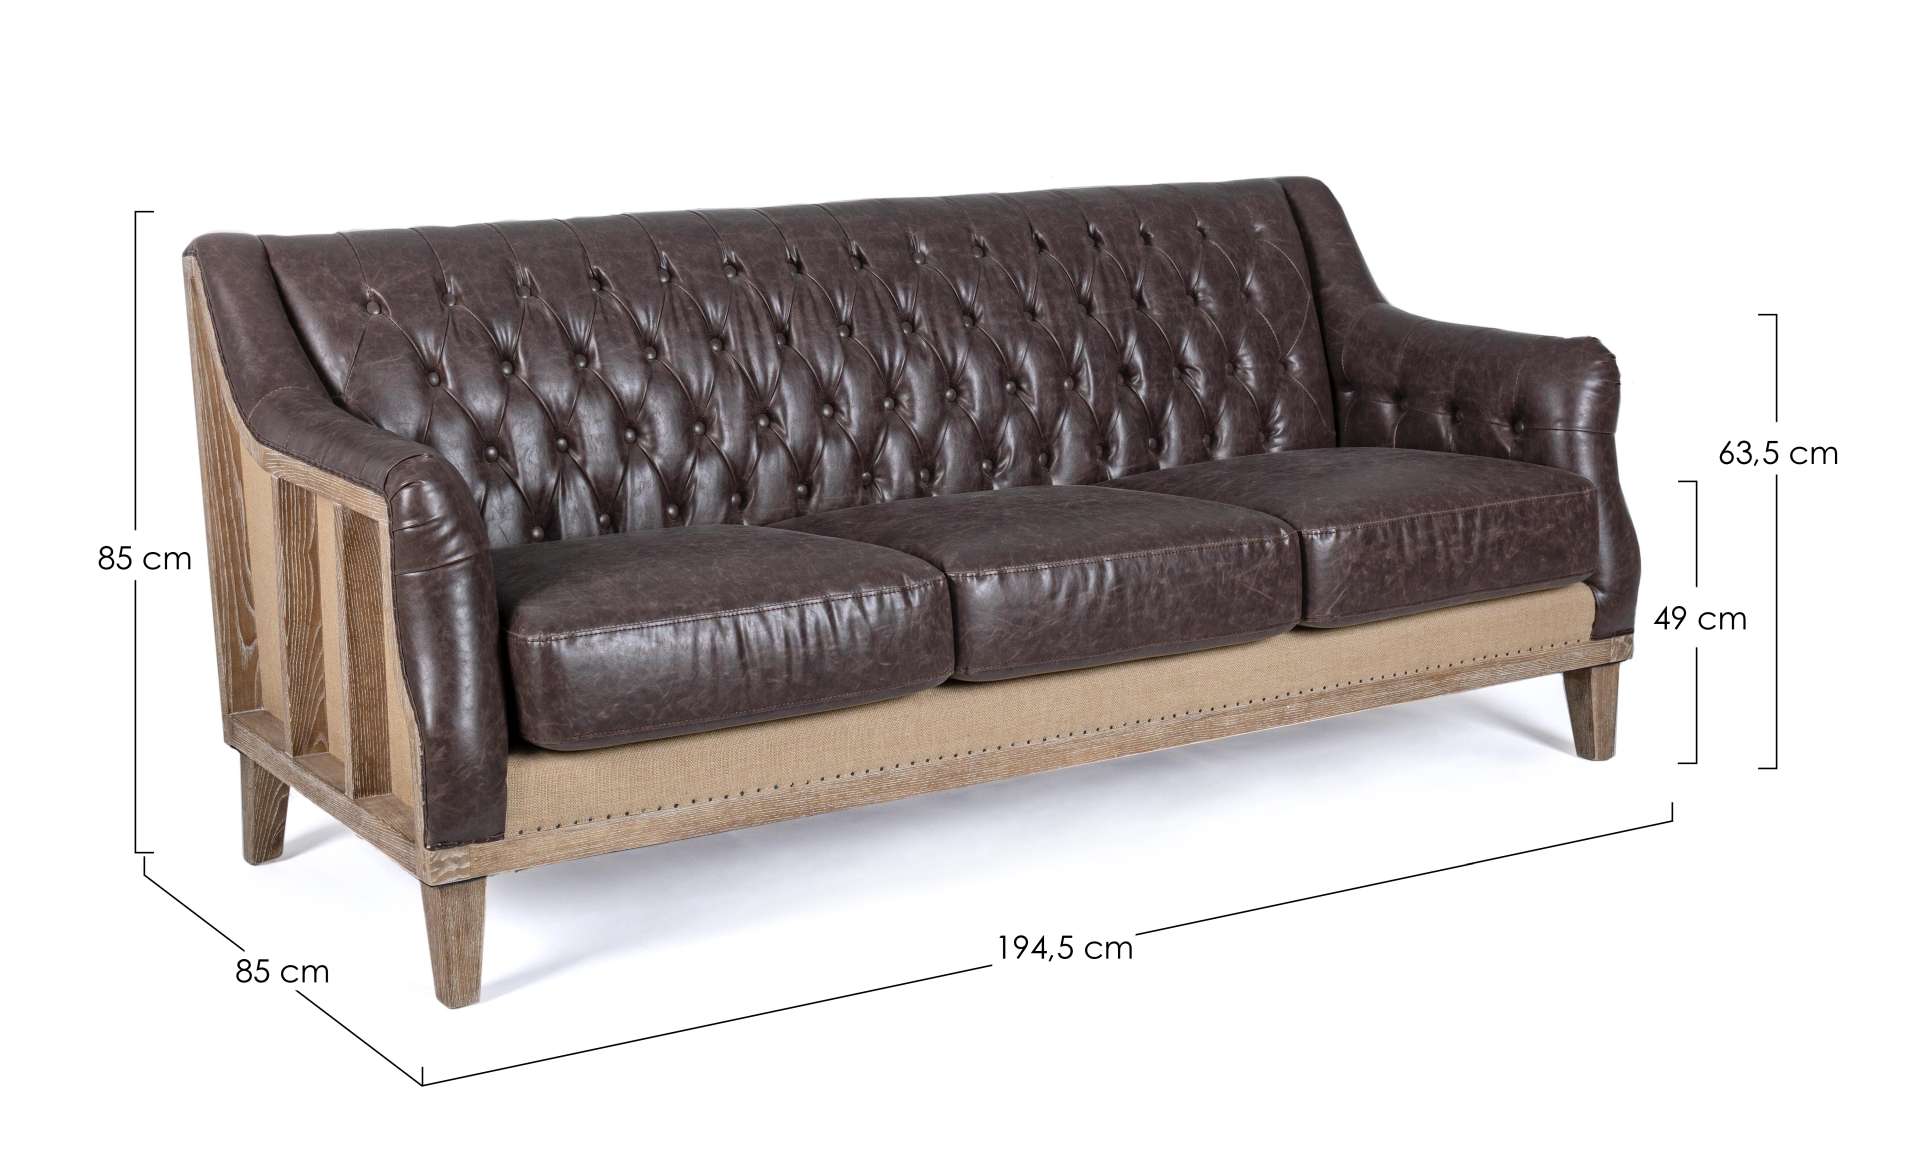 Das Sofa Raymond überzeugt mit seinem klassischen Design. Gefertigt wurde es aus Kunstleder, welches einen braunen Farbton besitzt. Das Gestell ist aus Eschenholz und hat eine natürliche Farbe. Das Sofa ist in der Ausführung als 3-Sitzer. Die Breite beträ